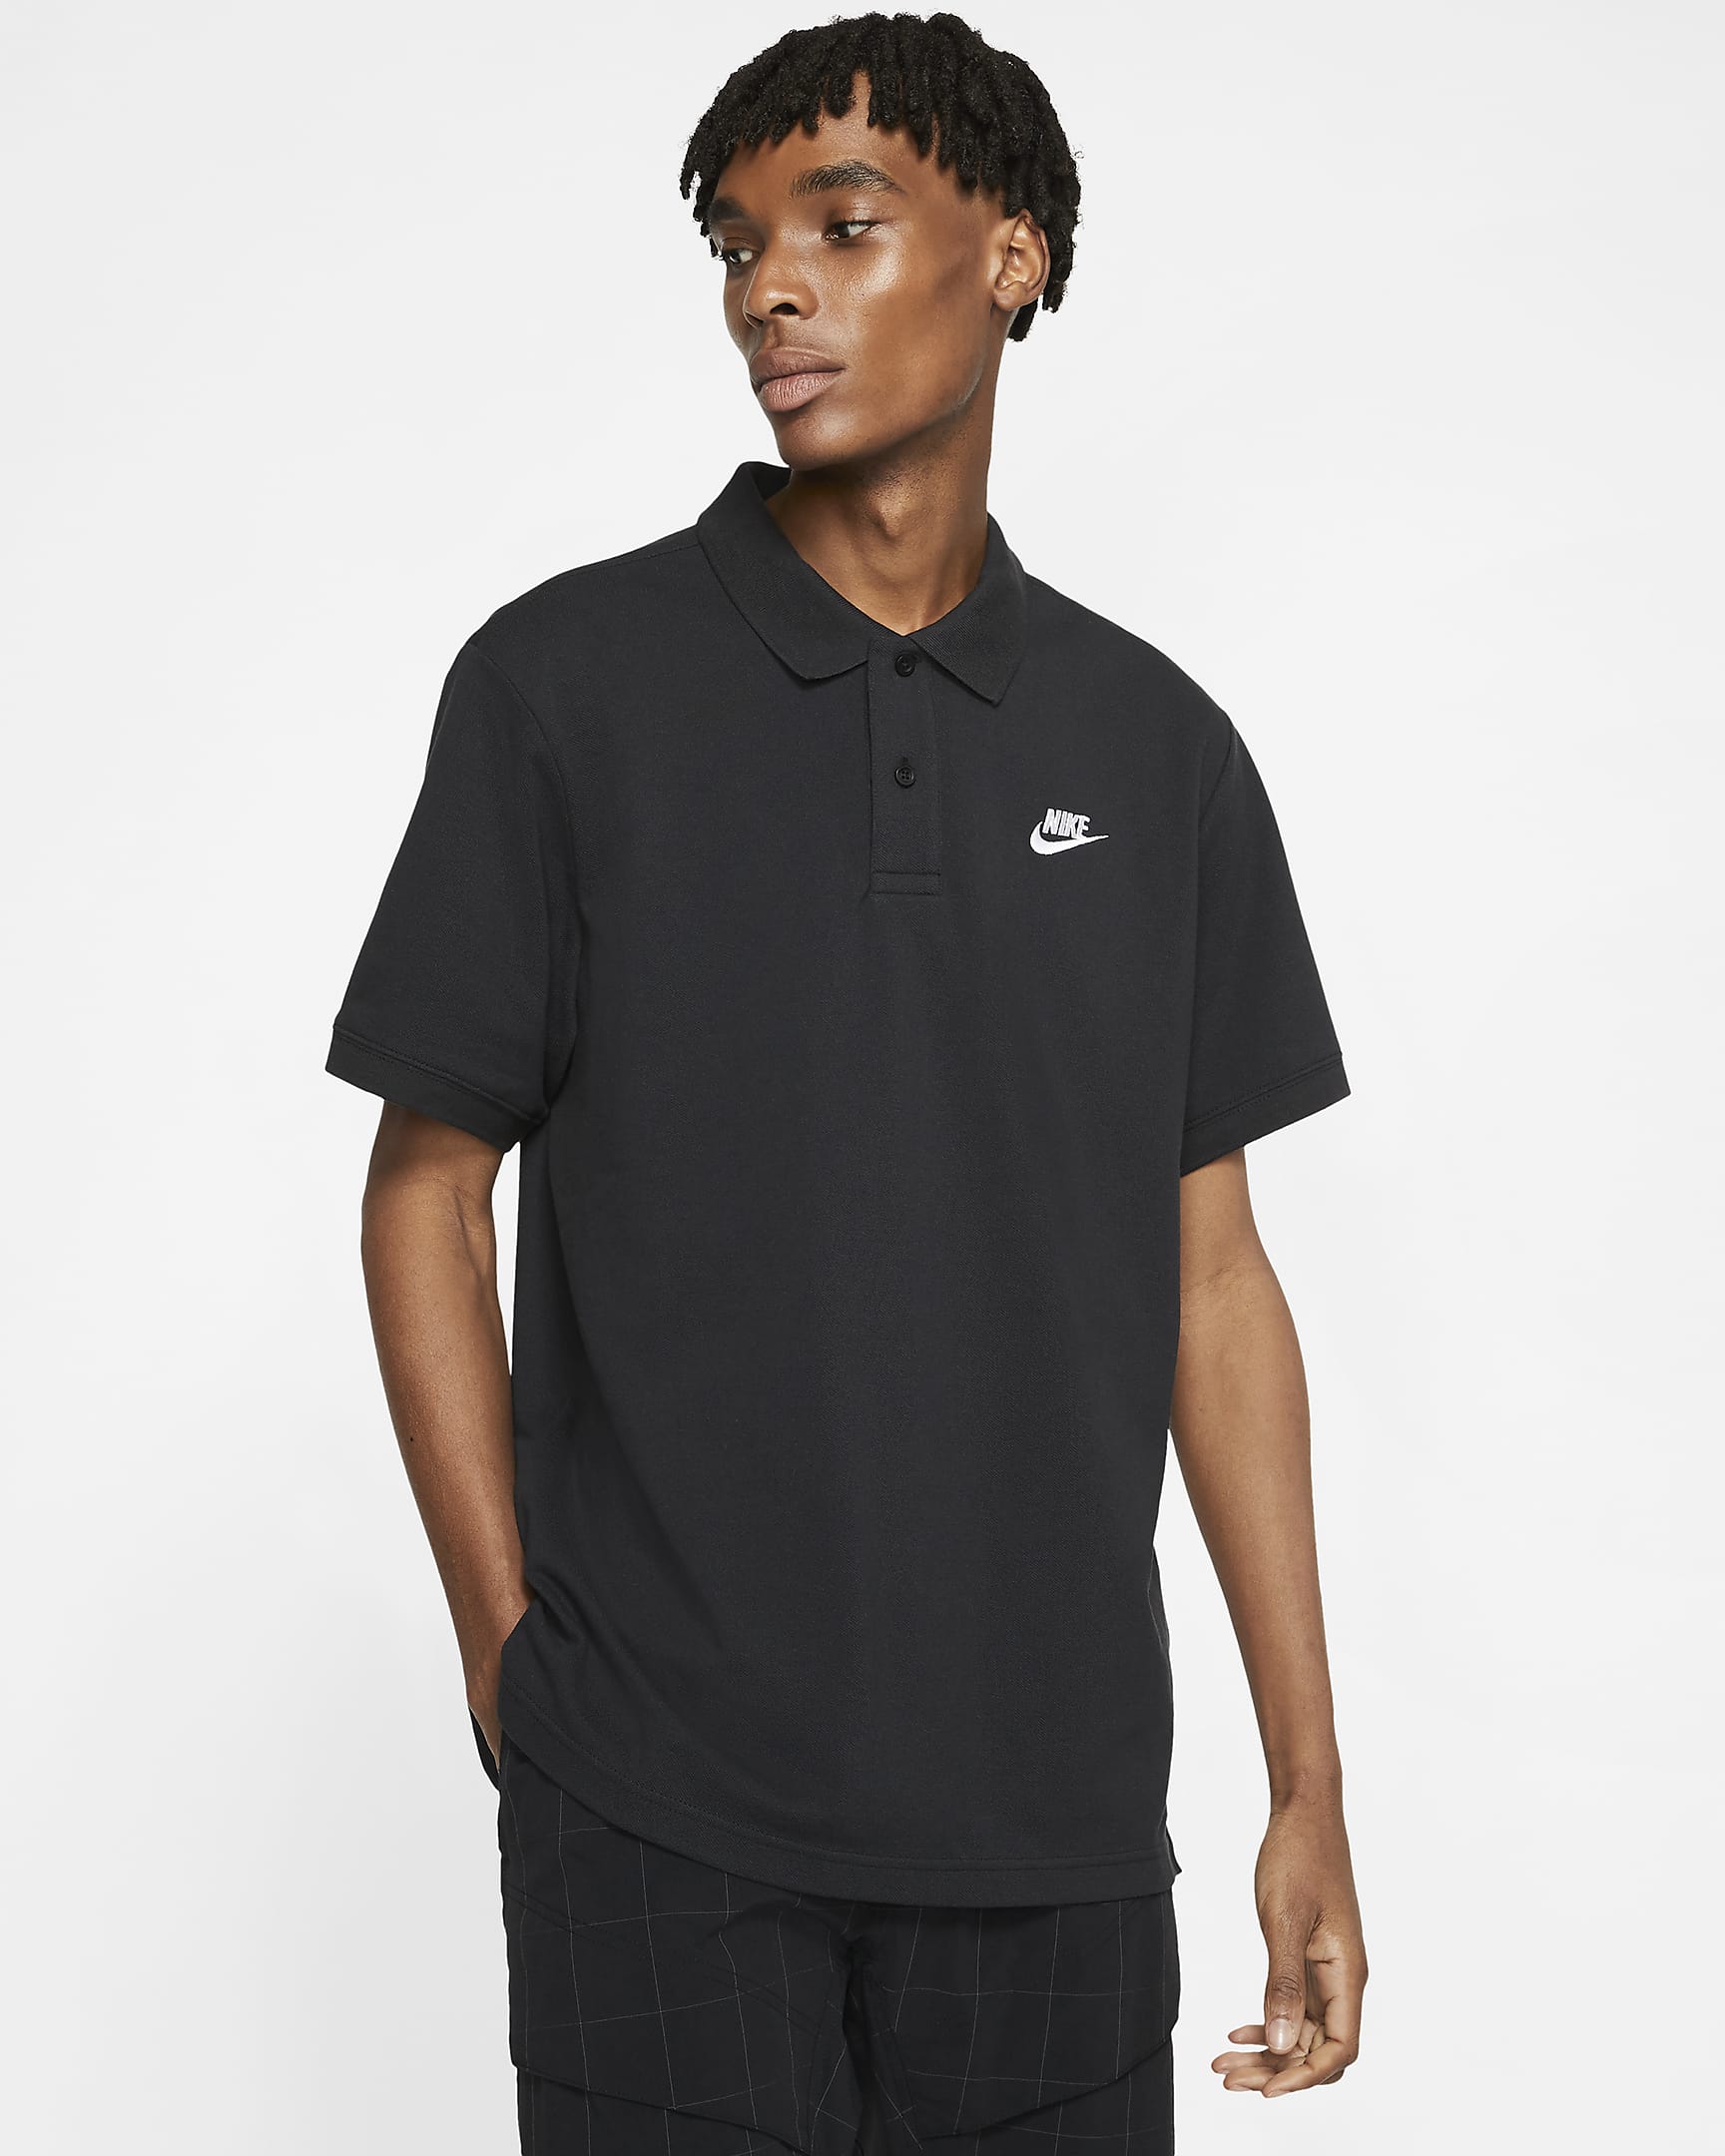 Nike Sportswear Men's Polo - Black/White